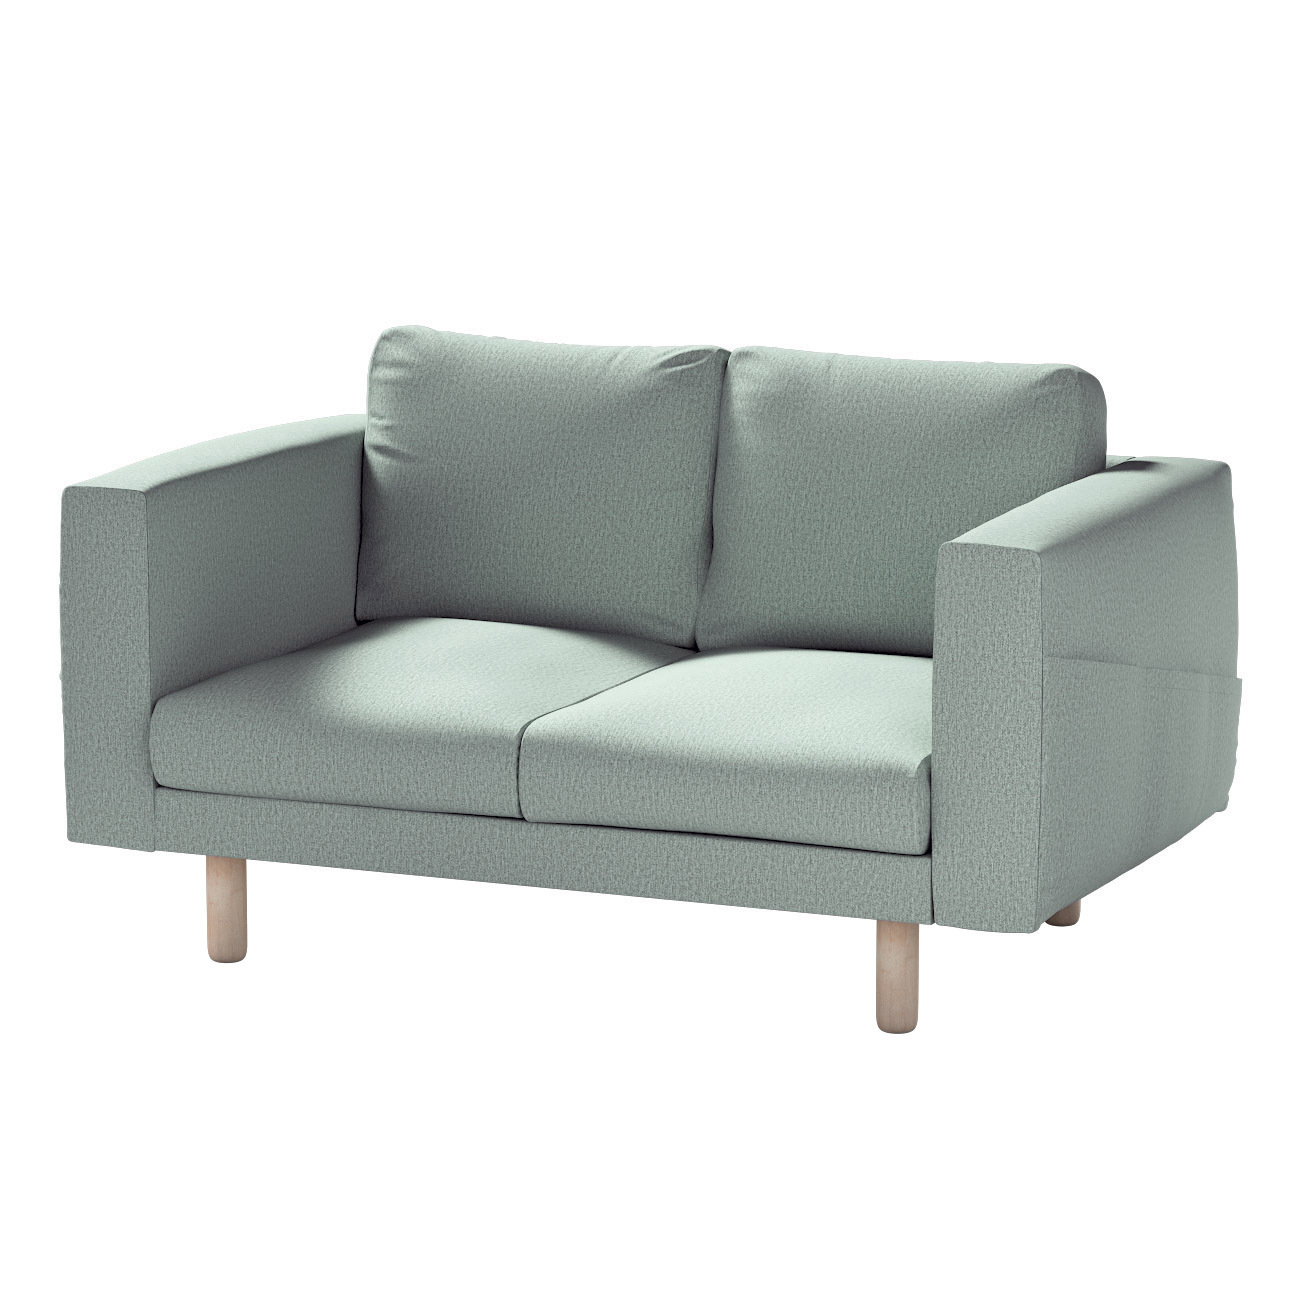 Bezug für Norsborg 2-Sitzer Sofa, eukalyptusgrün, Norsborg 2-Sitzer Sofabez günstig online kaufen